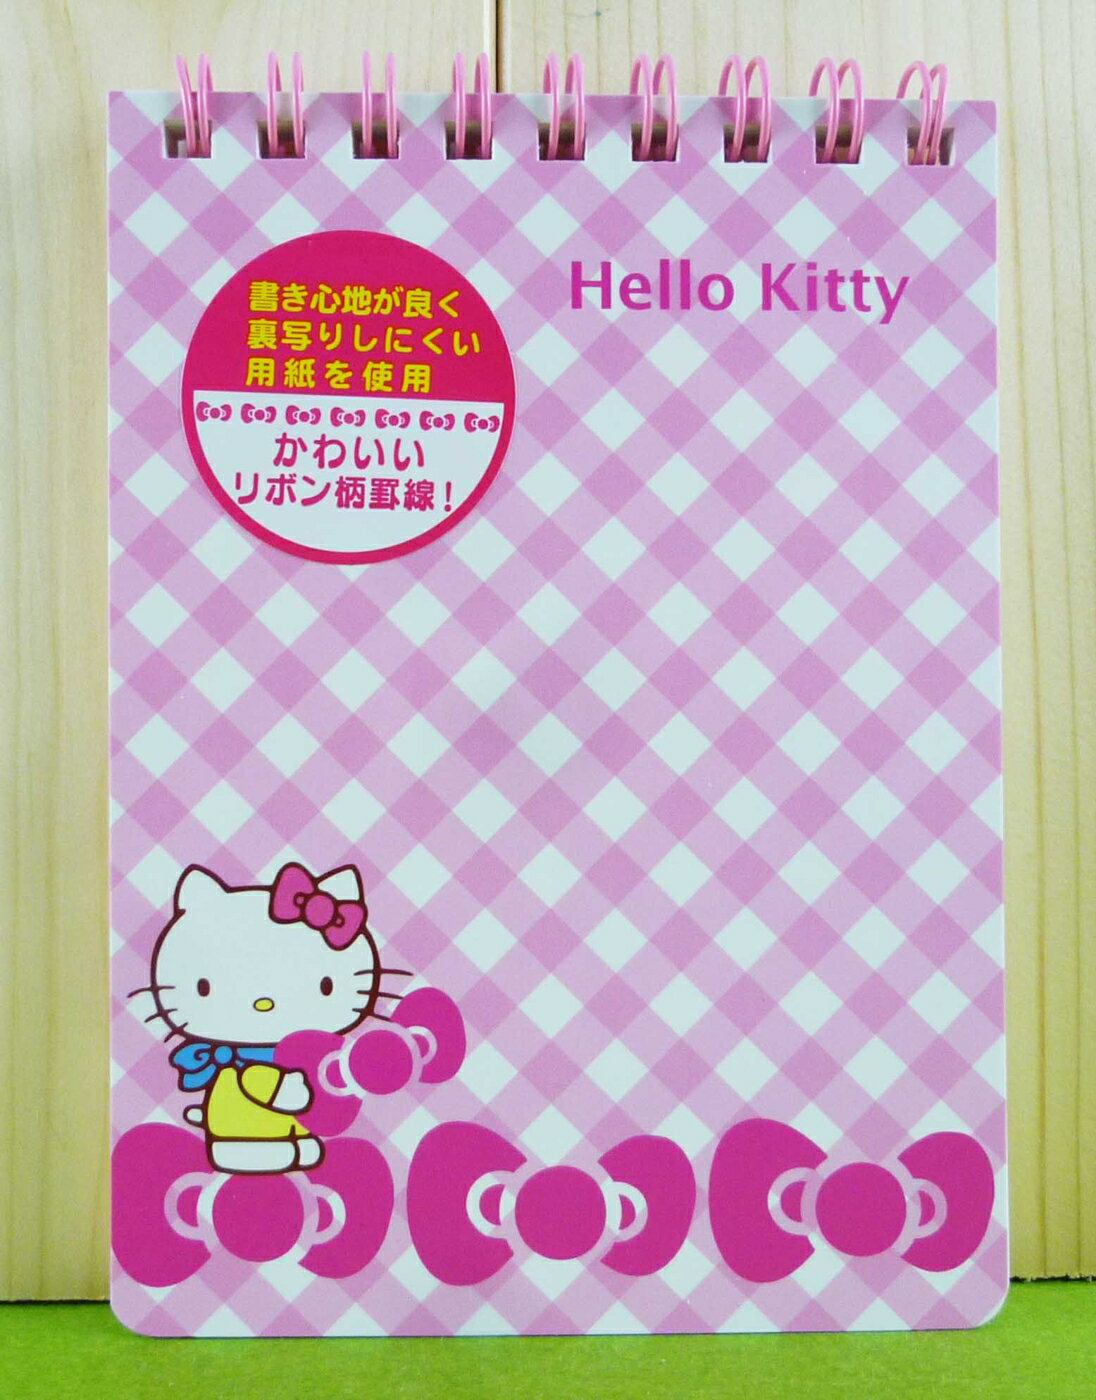 【震撼精品百貨】Hello Kitty 凱蒂貓 筆記本 粉格蝴蝶結【共1款】 震撼日式精品百貨